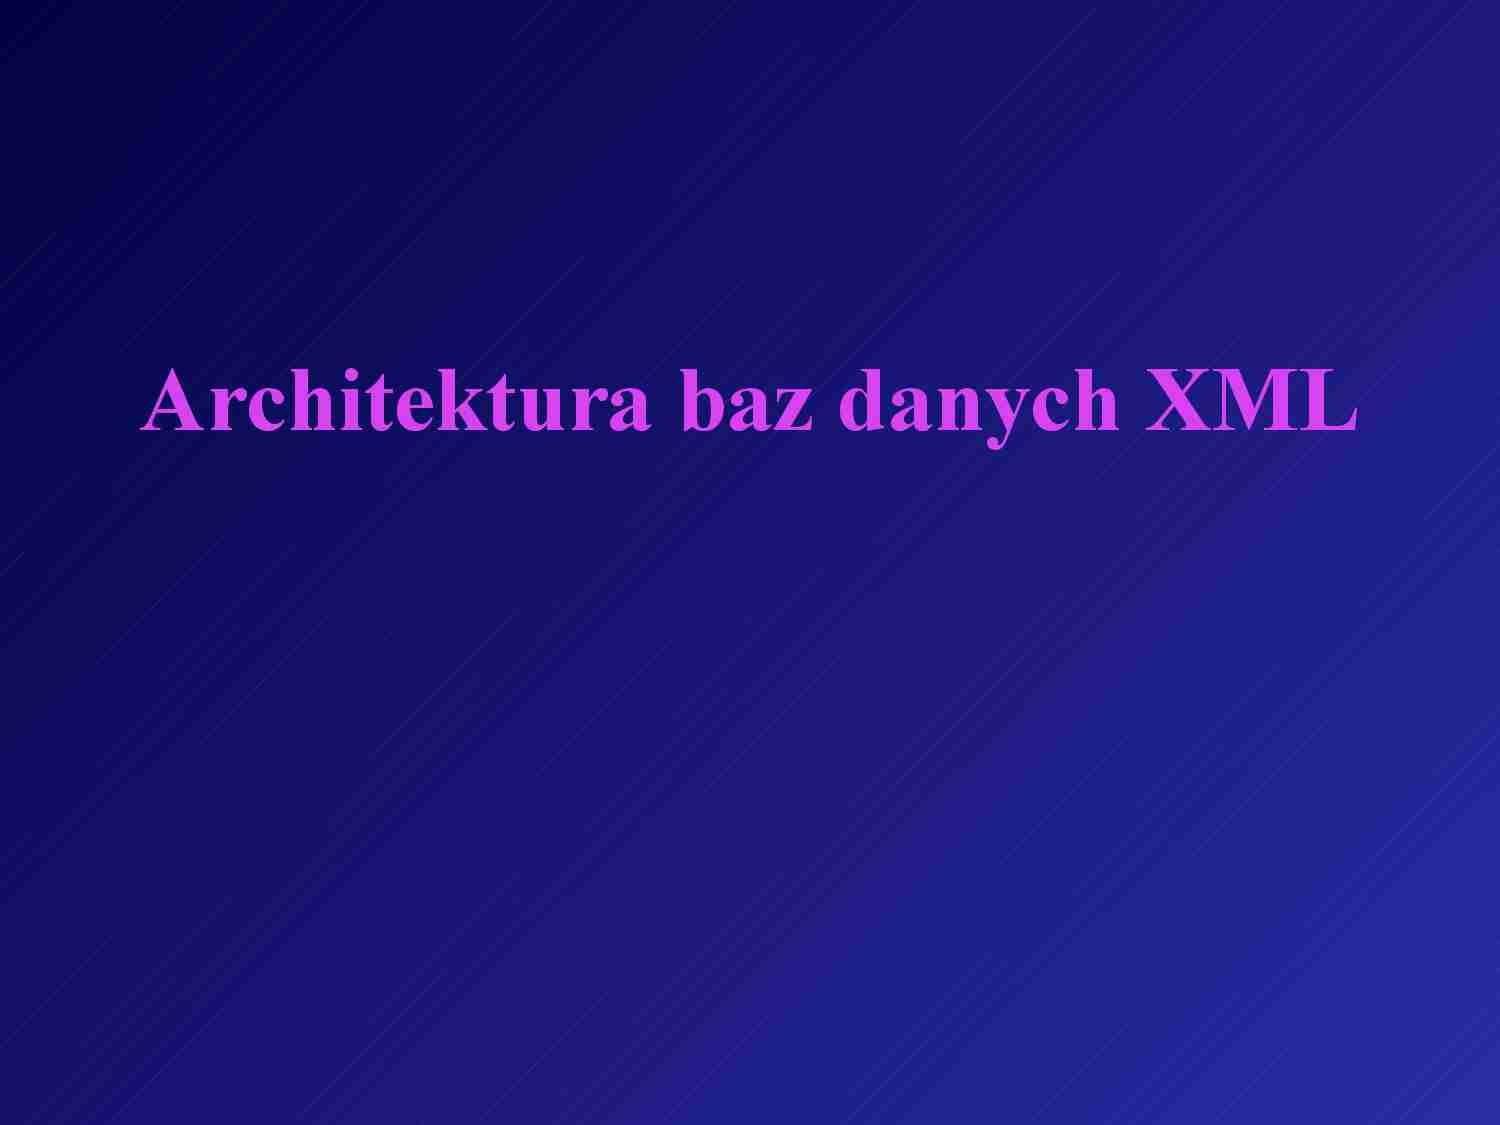 Architektura baz danych XML - strona 1